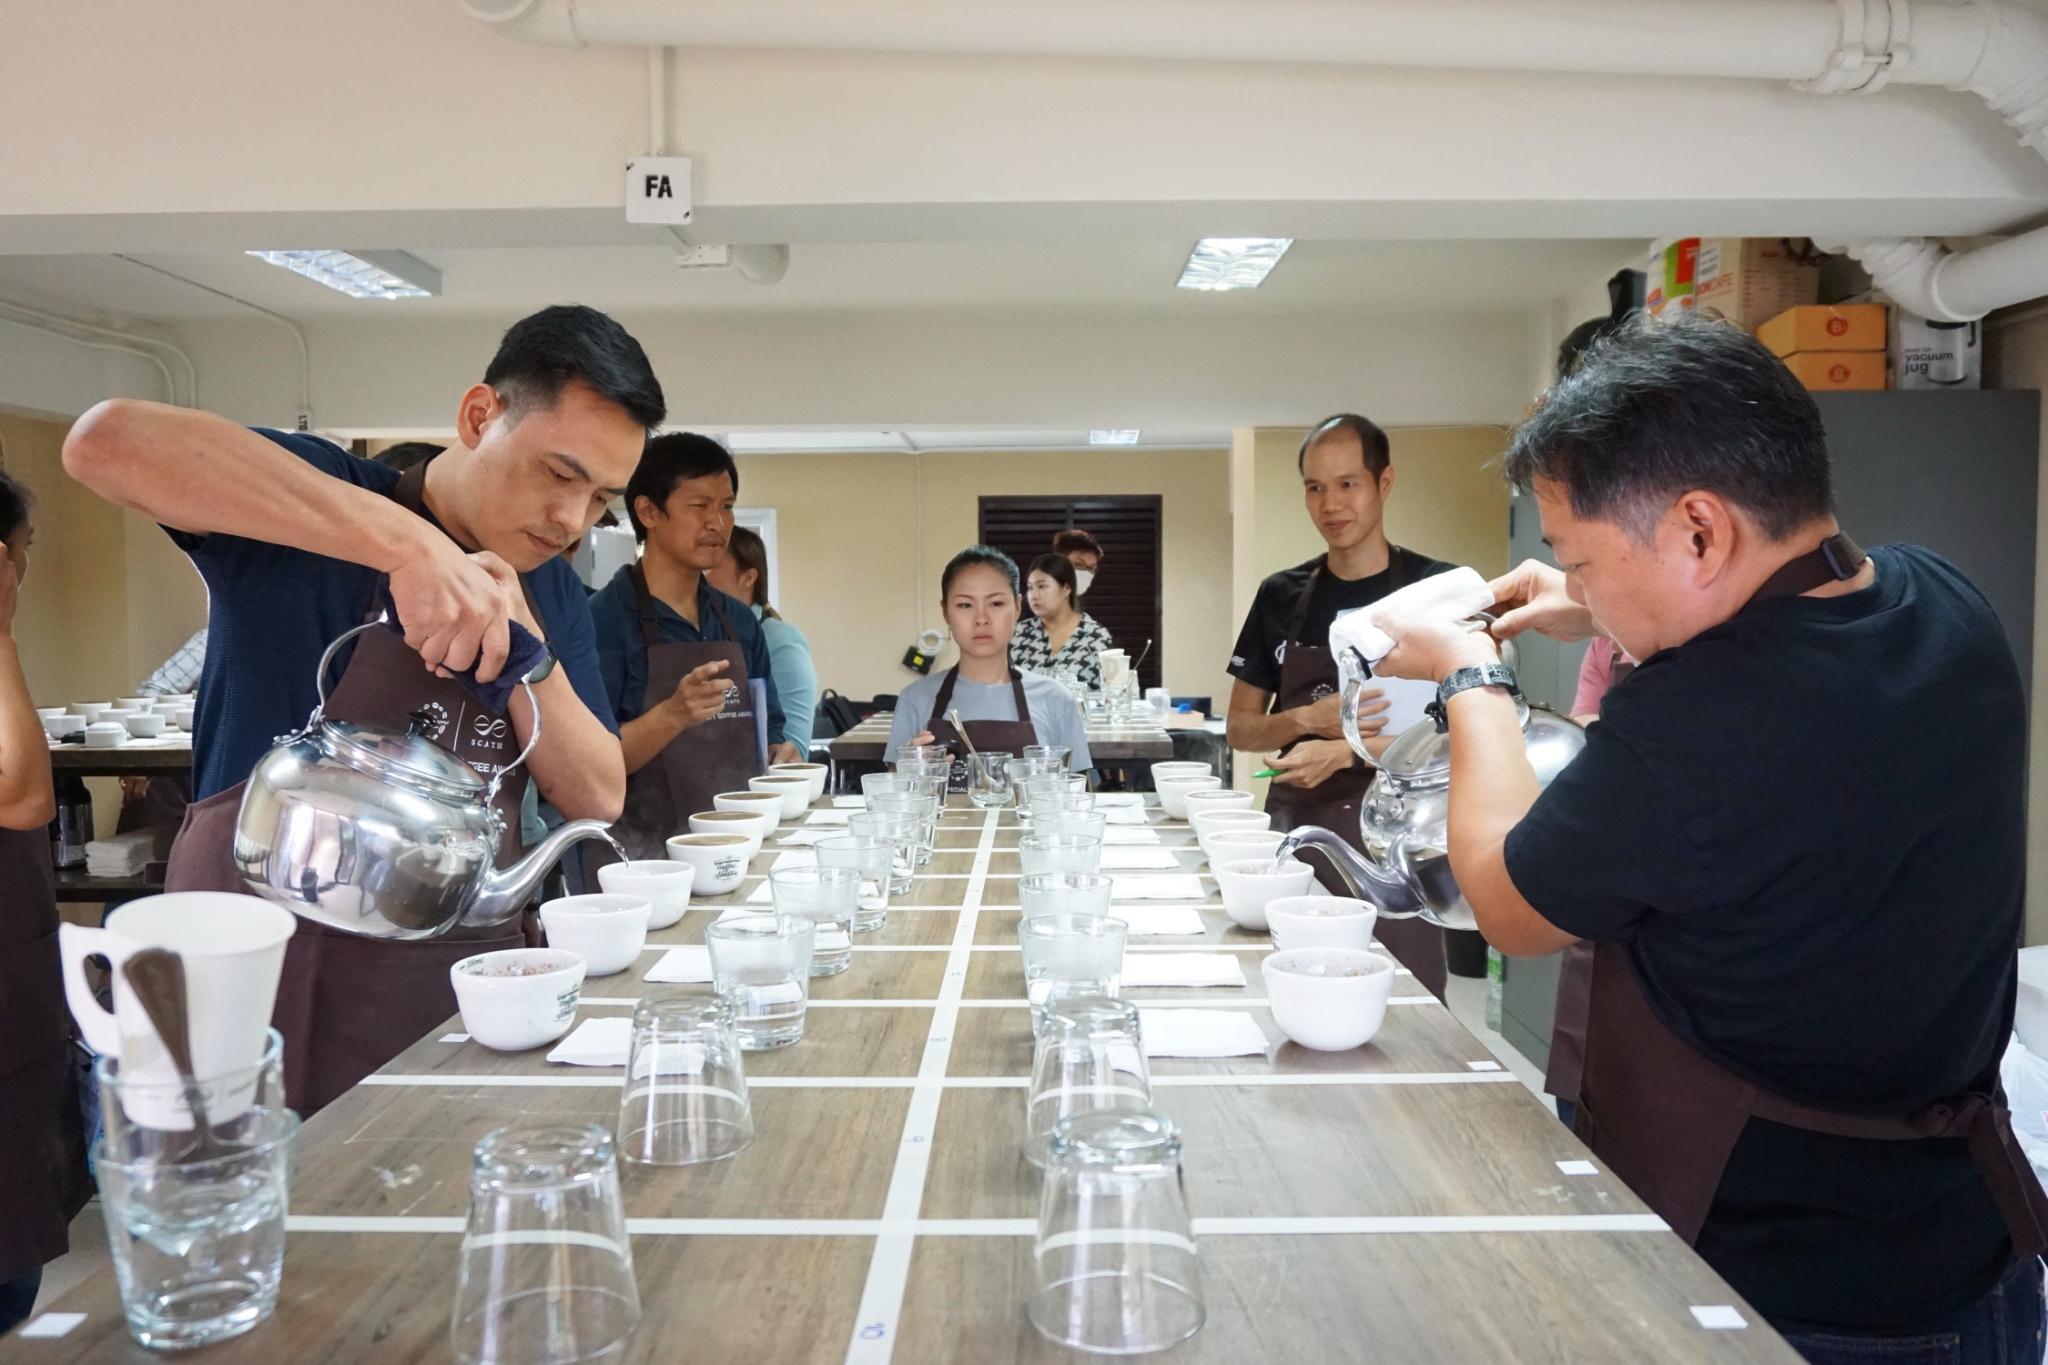 สมาคมกาแฟพิเศษไทย สร้างประวัติศาสตร์วงการกาแฟ จัดประมูลออนไลน์ เมล็ดกาแฟไทย ทำรายได้ยอดประมูลกว่า 3 ล้านบาท